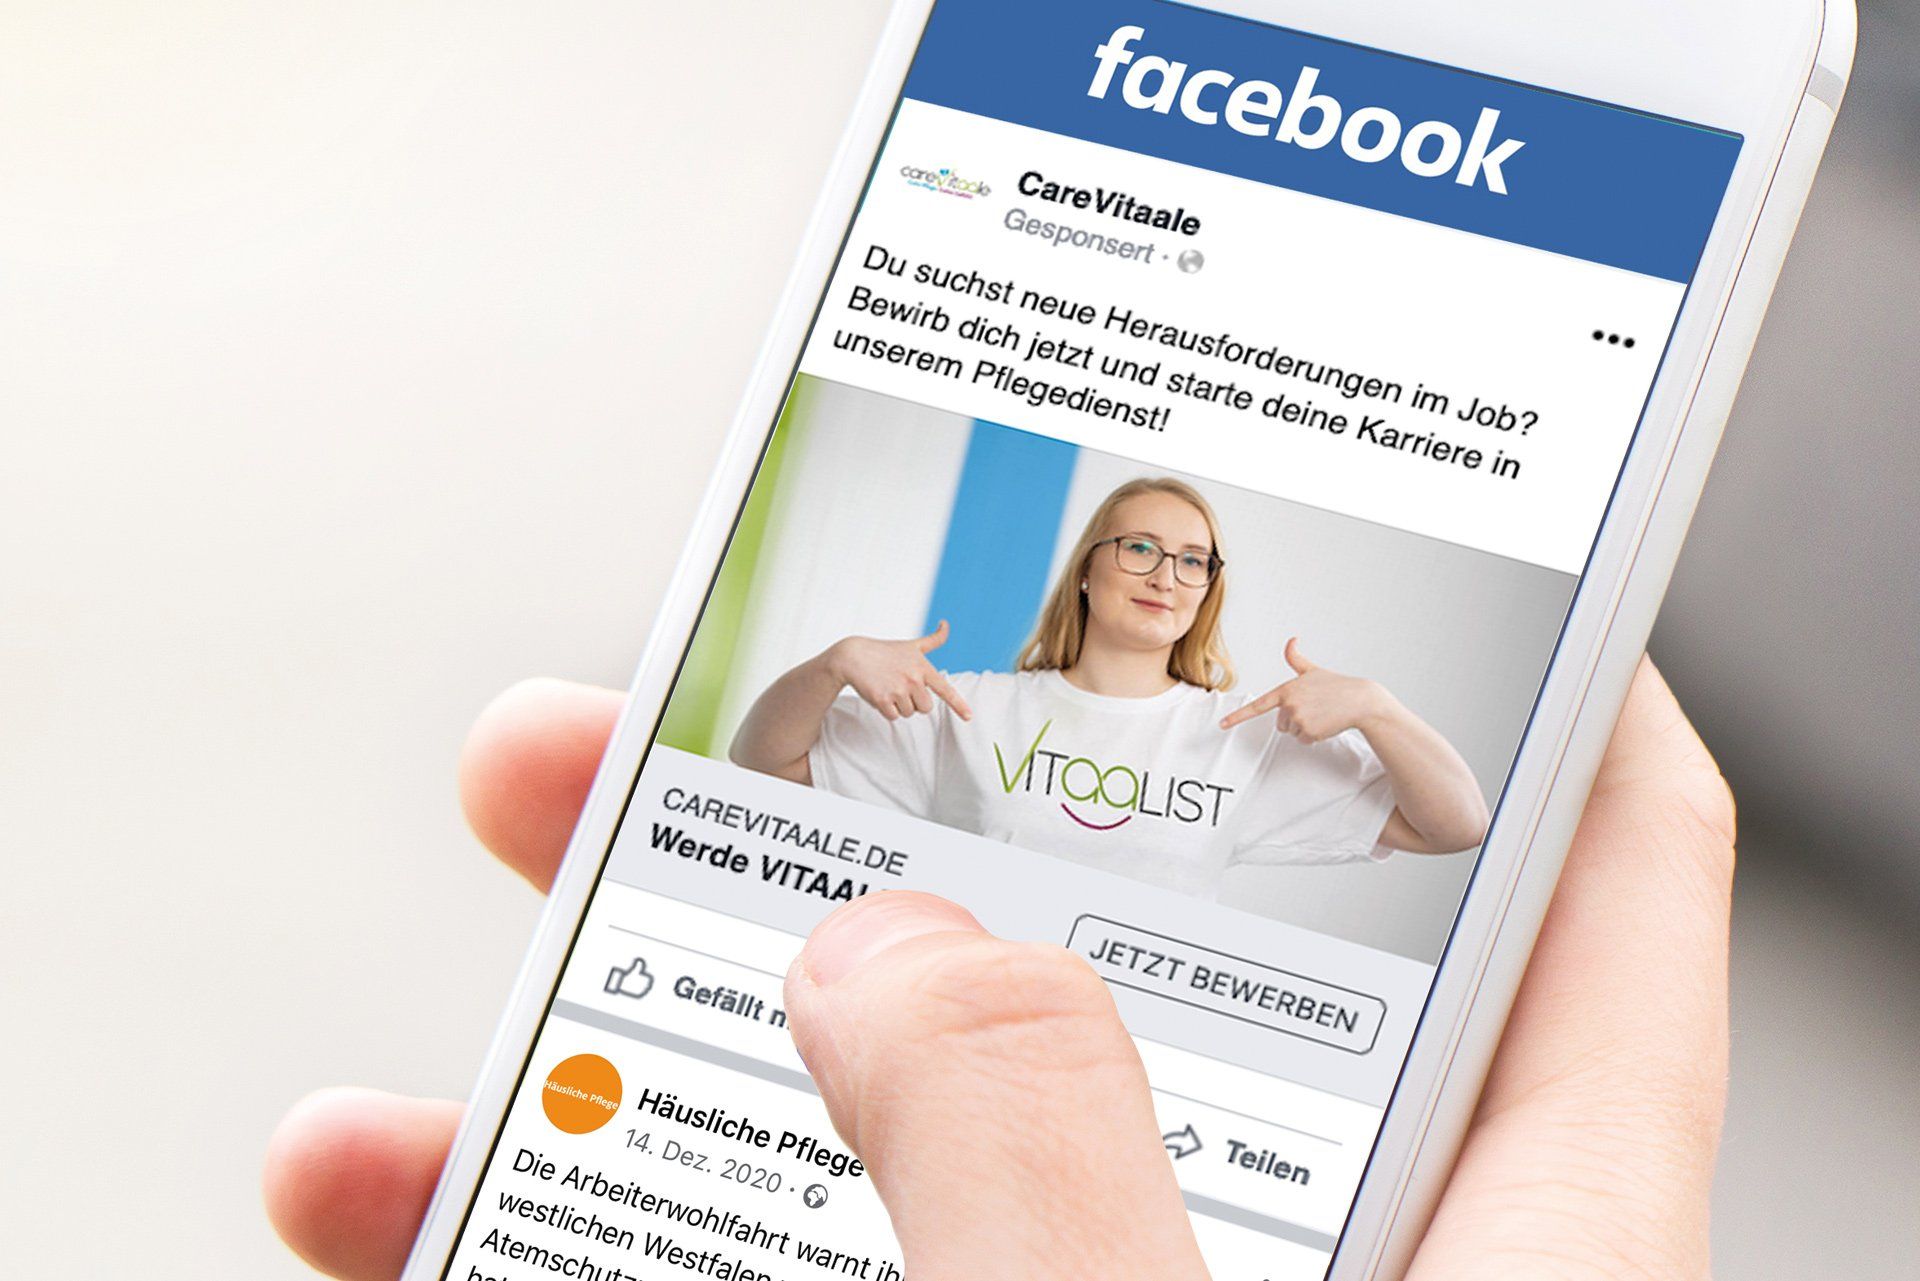 PFLEGERWOHL Facebook Recruiting Eine bezahlte JObanzeige eines Pflegedienstes ist auf einem Smartphone zu sehen